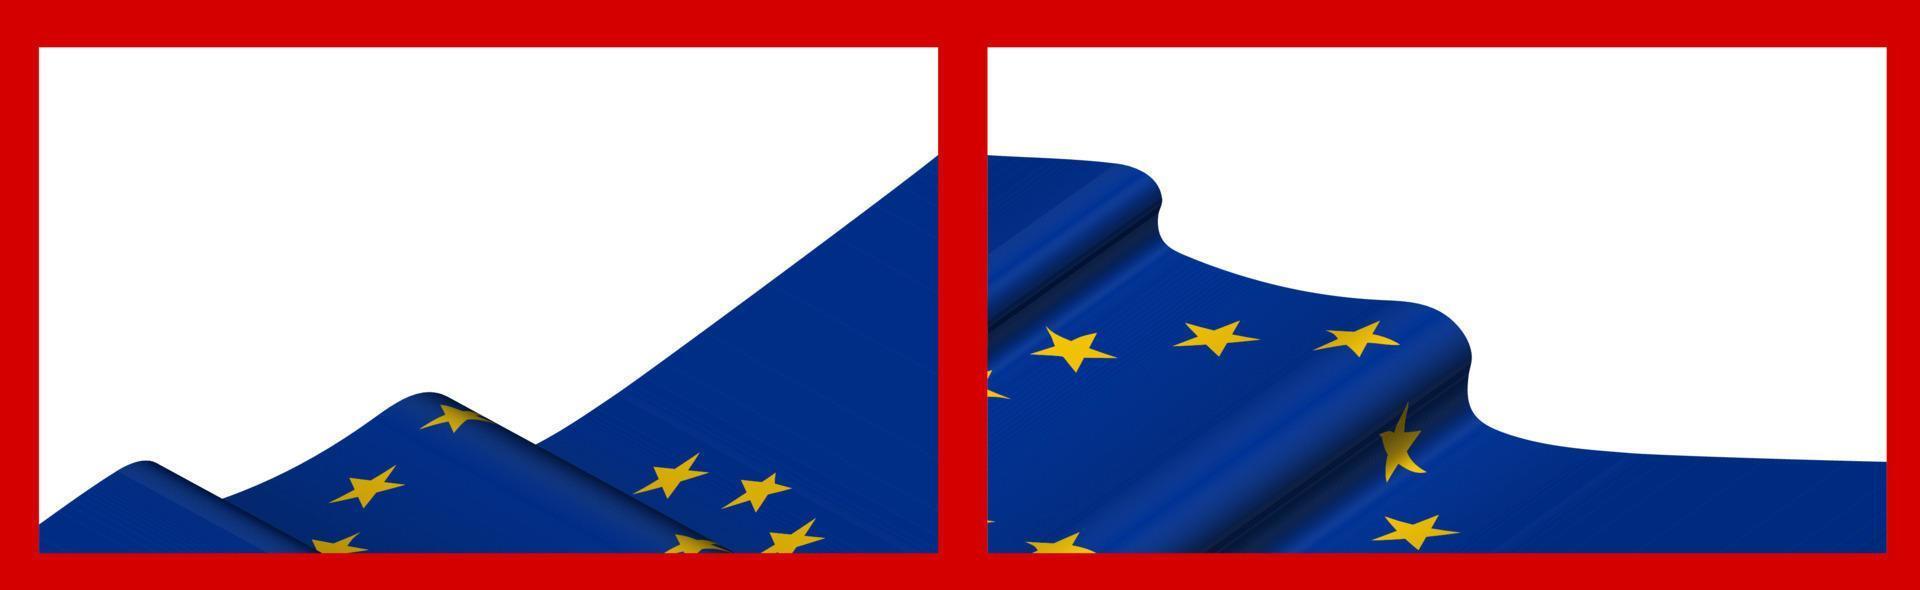 fondo, plantilla para diseño festivo. bandera de la unión europea ondeando en el viento. vector realista sobre fondo rojo